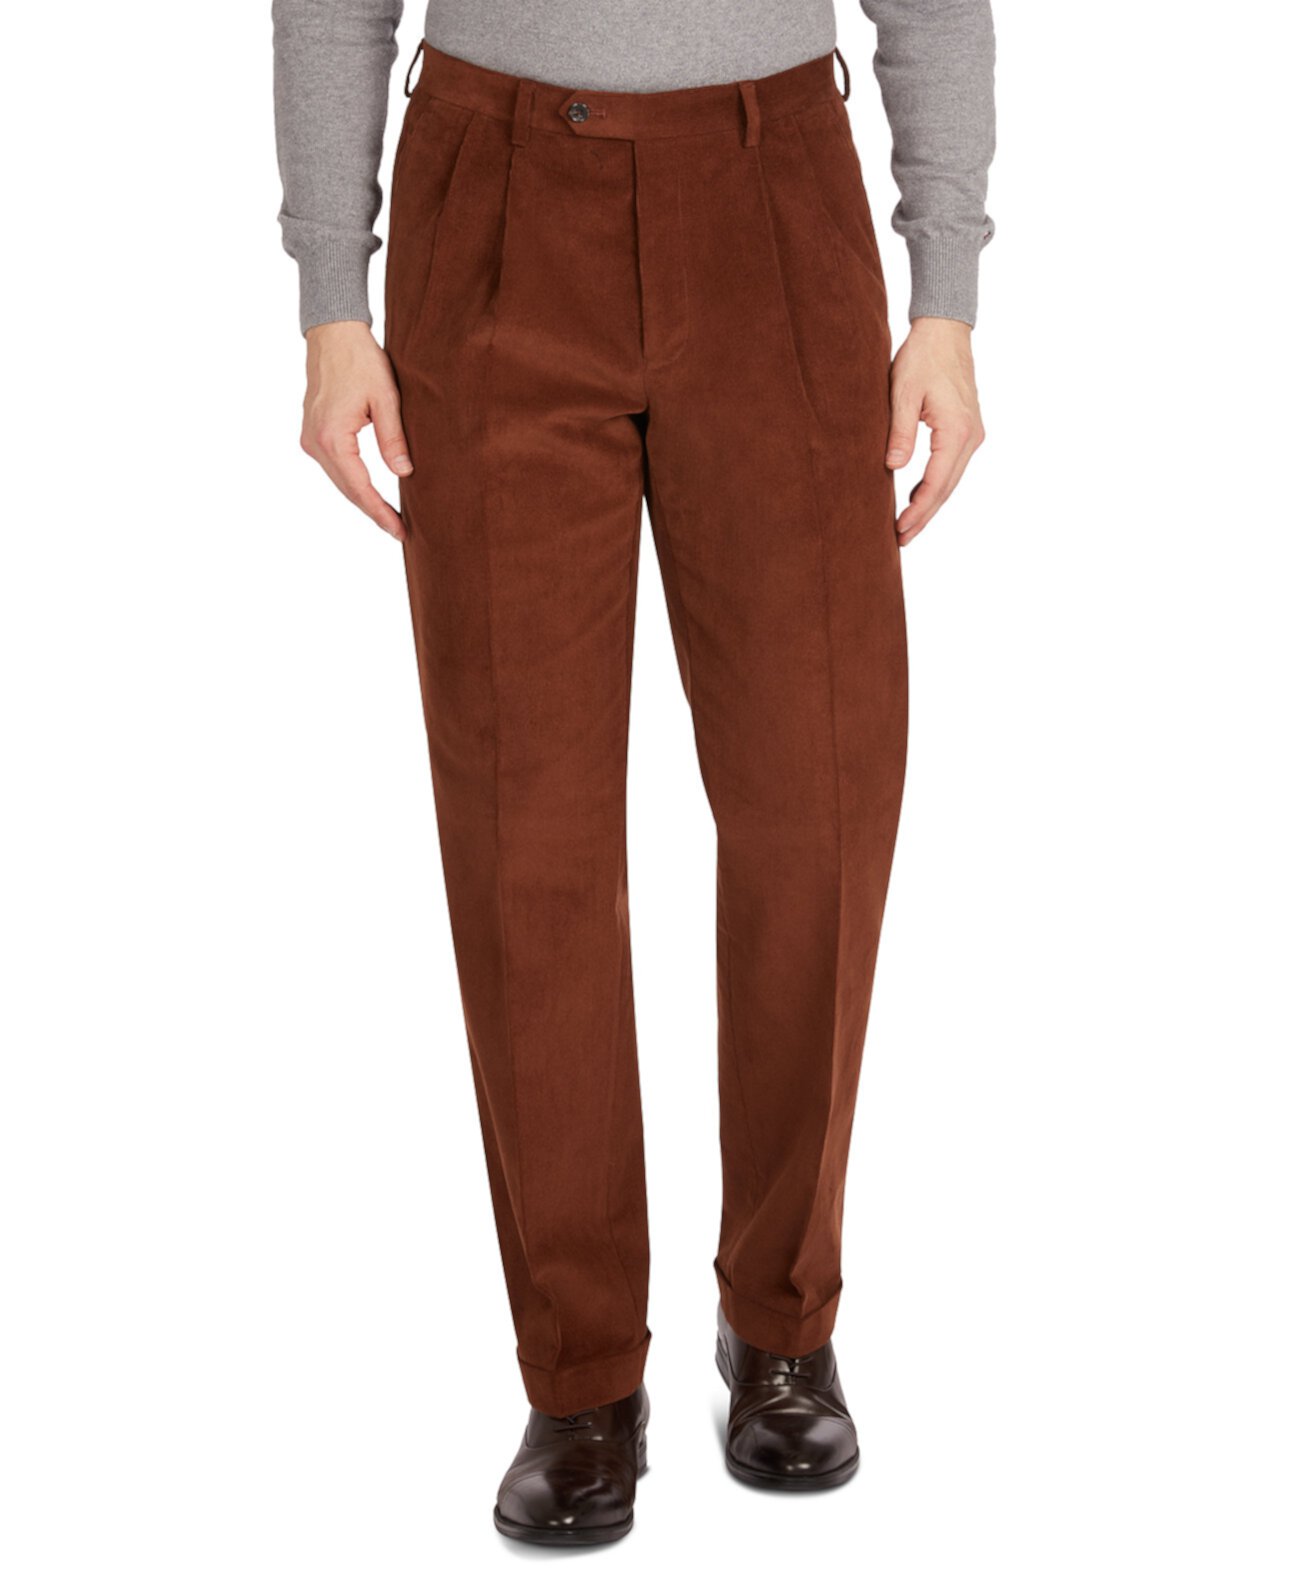 Мужские классические / вельветовые классические брюки с двойной перевернутой складкой и классическим / стандартным кроем Ralph Lauren